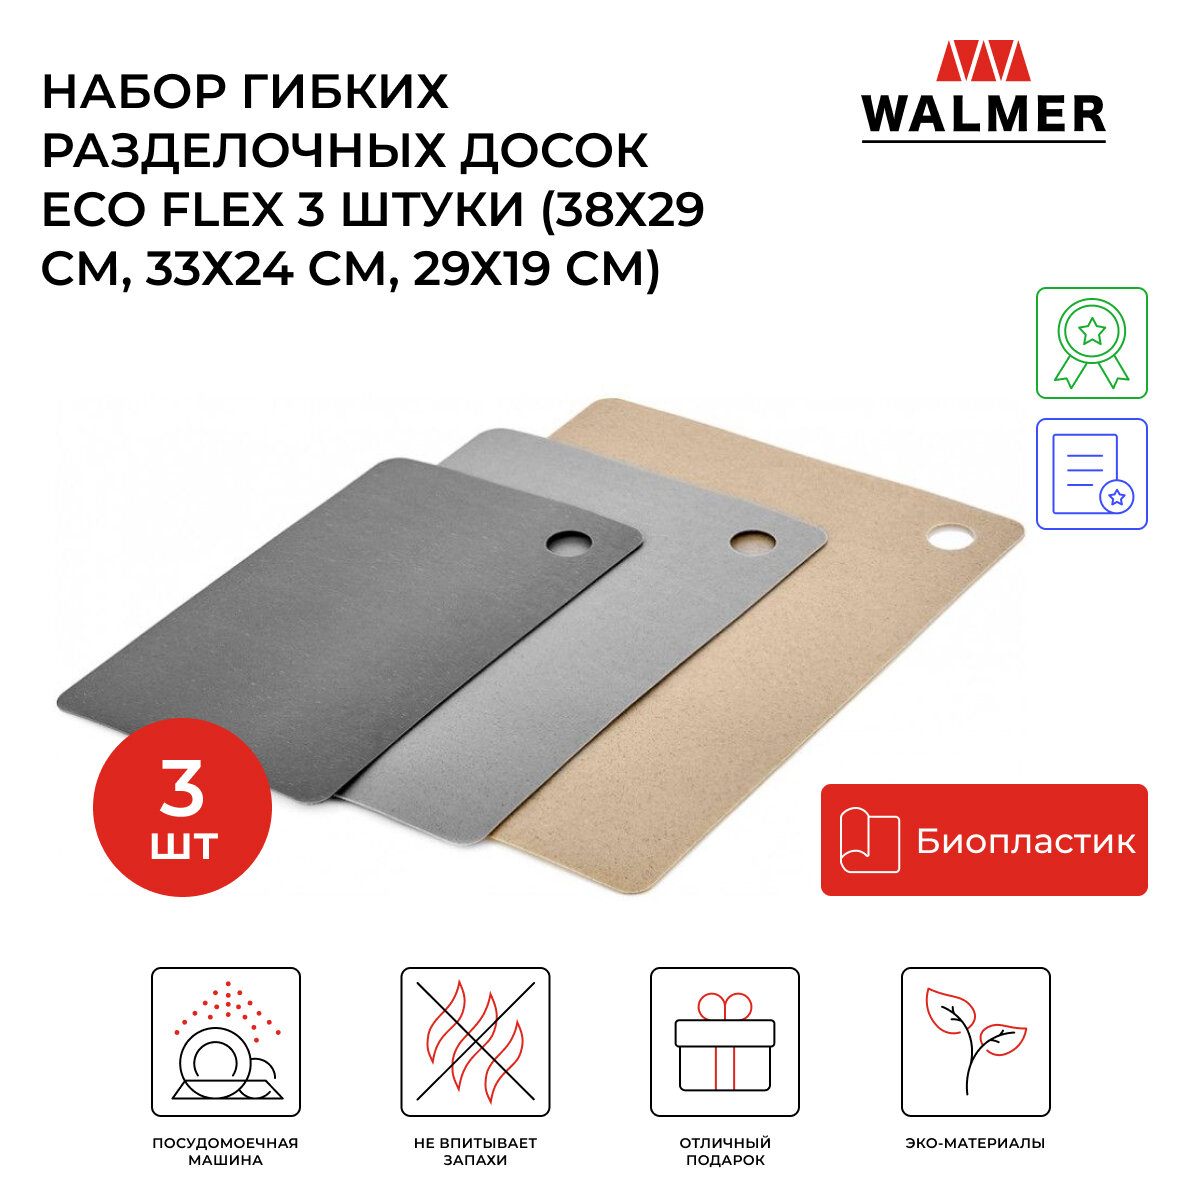 Набор гибких разделочных досок Walmer Eco Flex 3 штуки (38х29 см, 33х24 см, 29х19 см), цвет серый